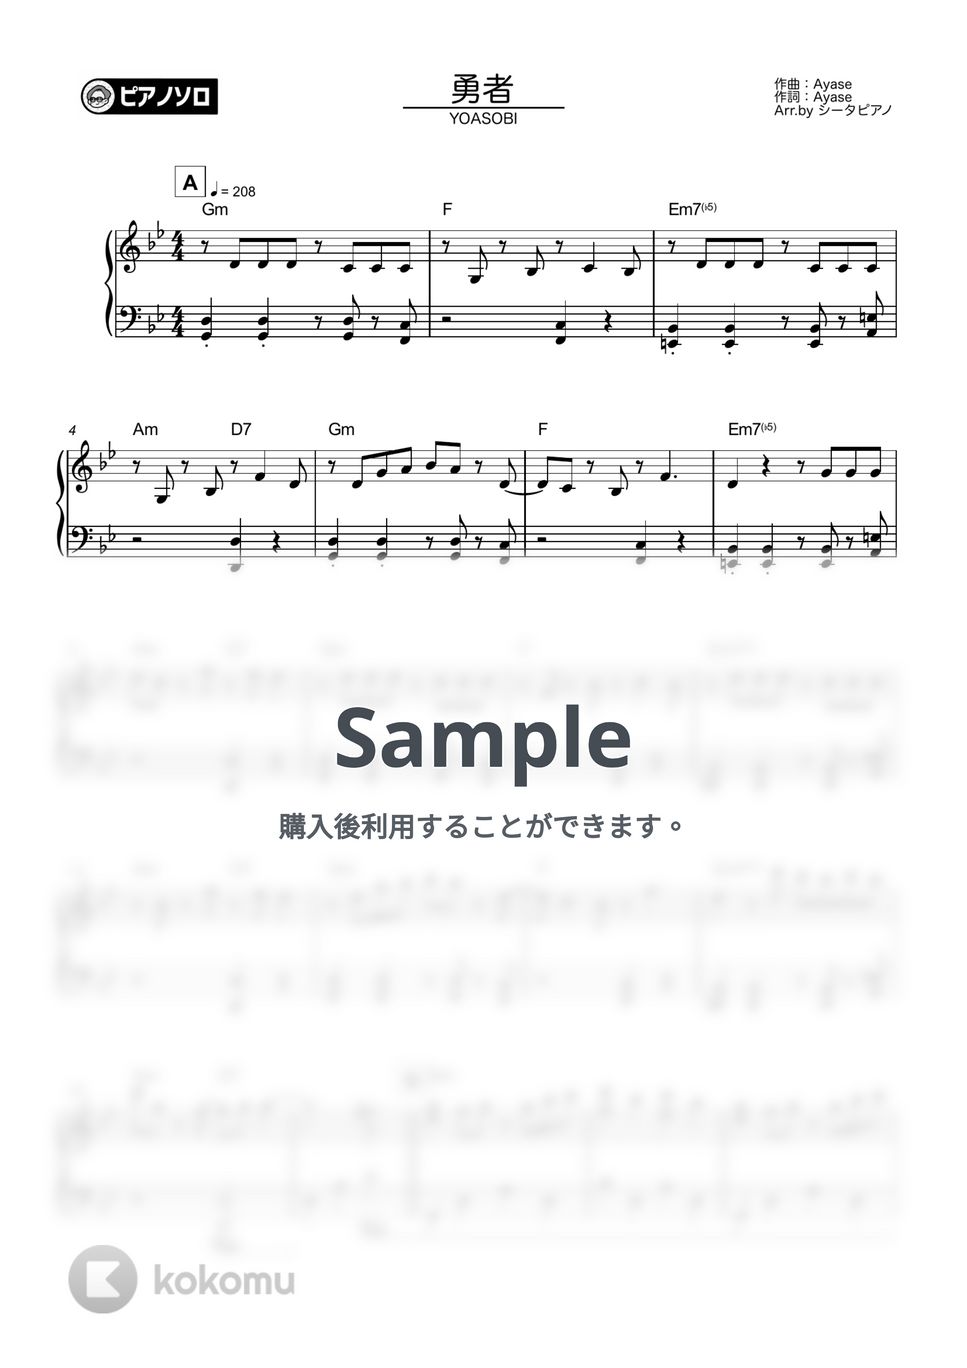 YOASOBI - 勇者 by シータピアノ